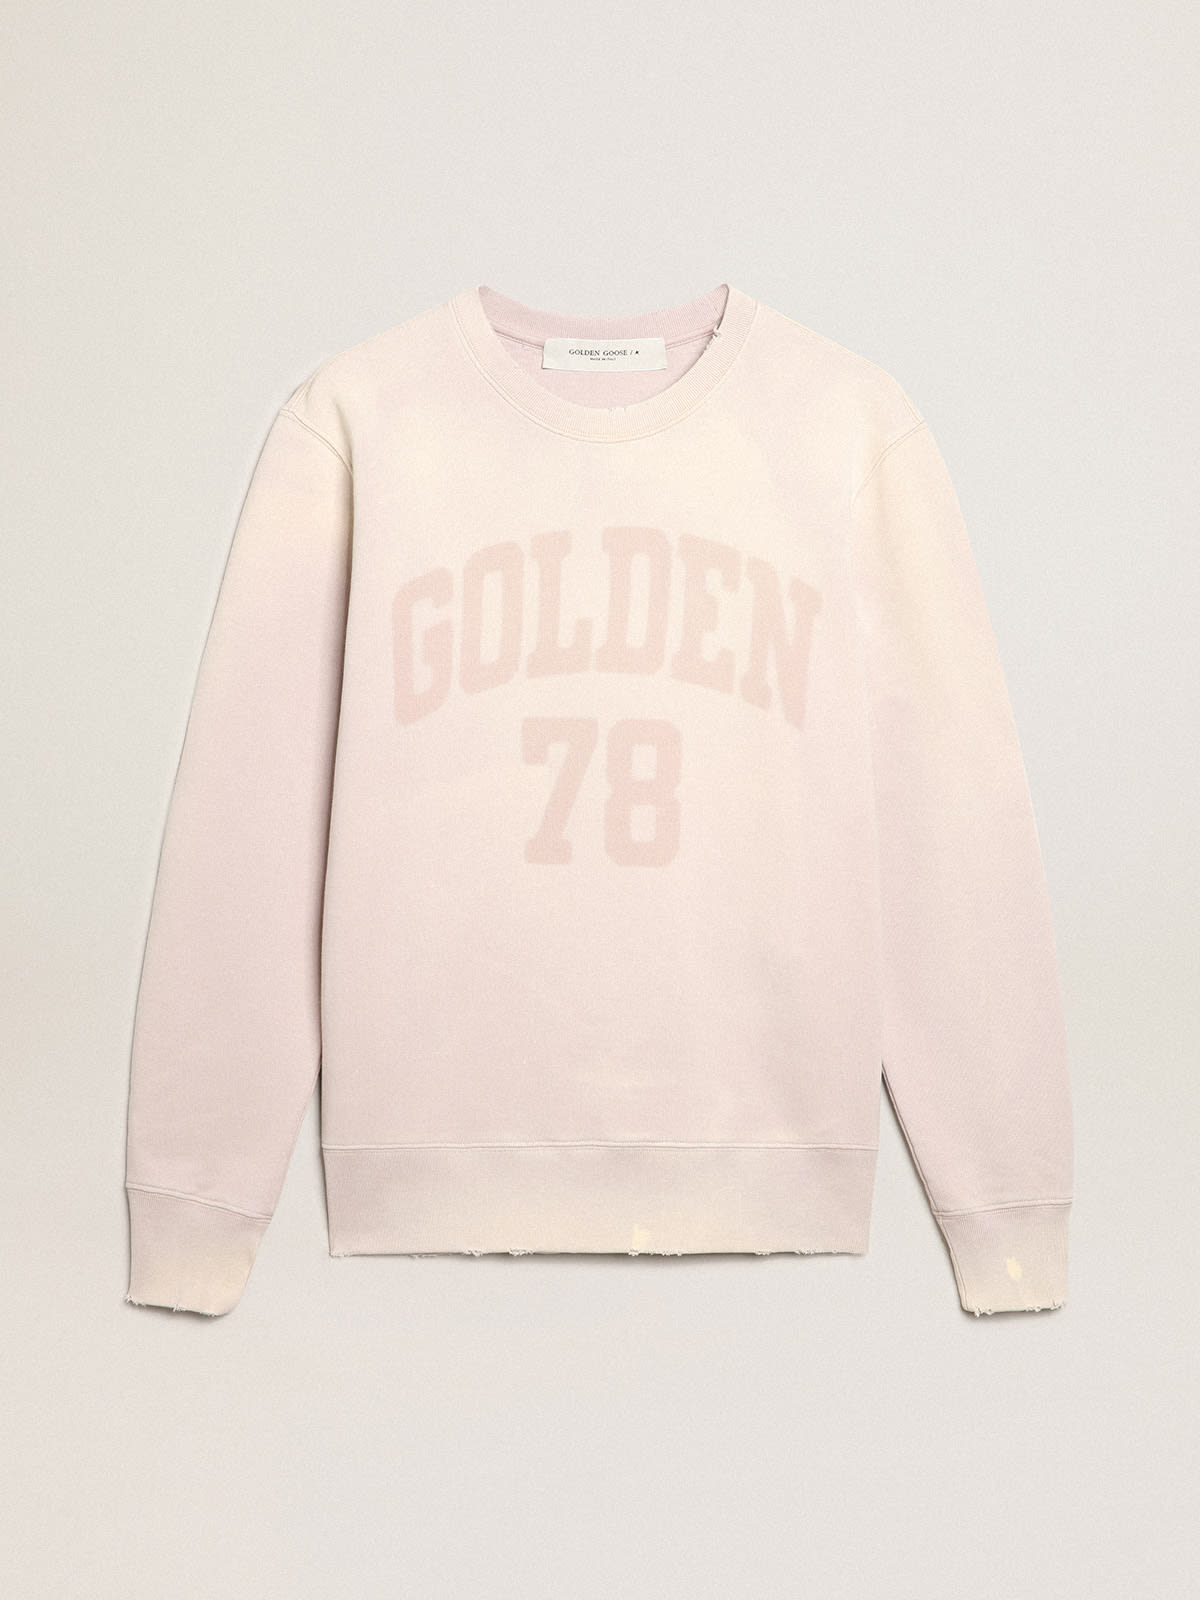 Golden Goose - Sudadera color rosa pálido con tratamiento desgastado in 